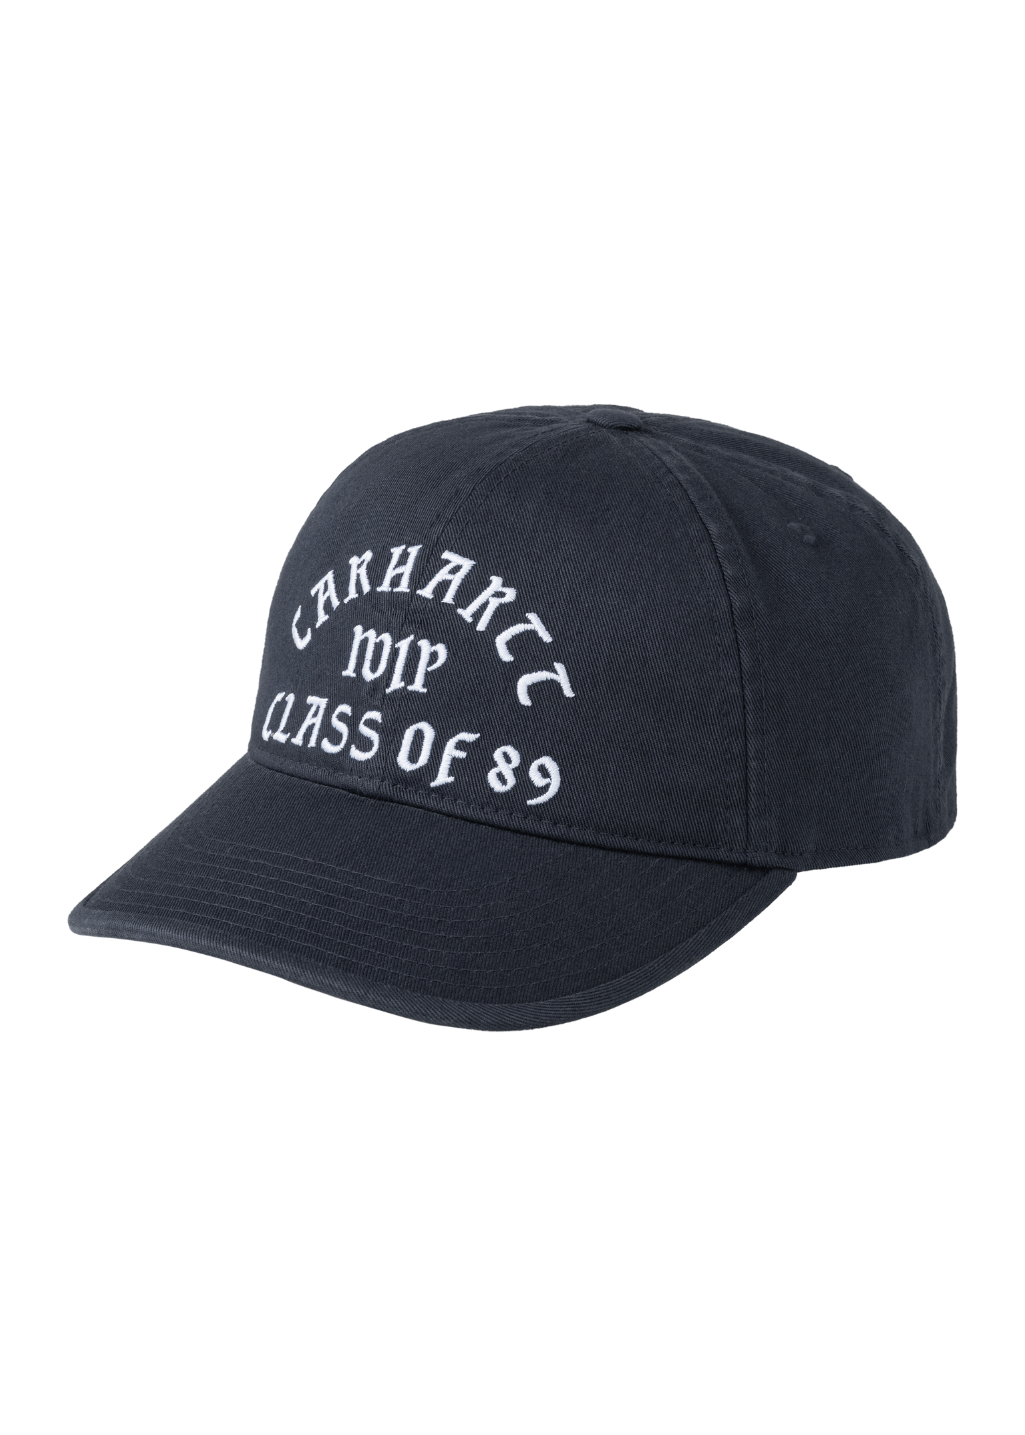 Ashley Rowe XL BUCKET HAT - BLACK